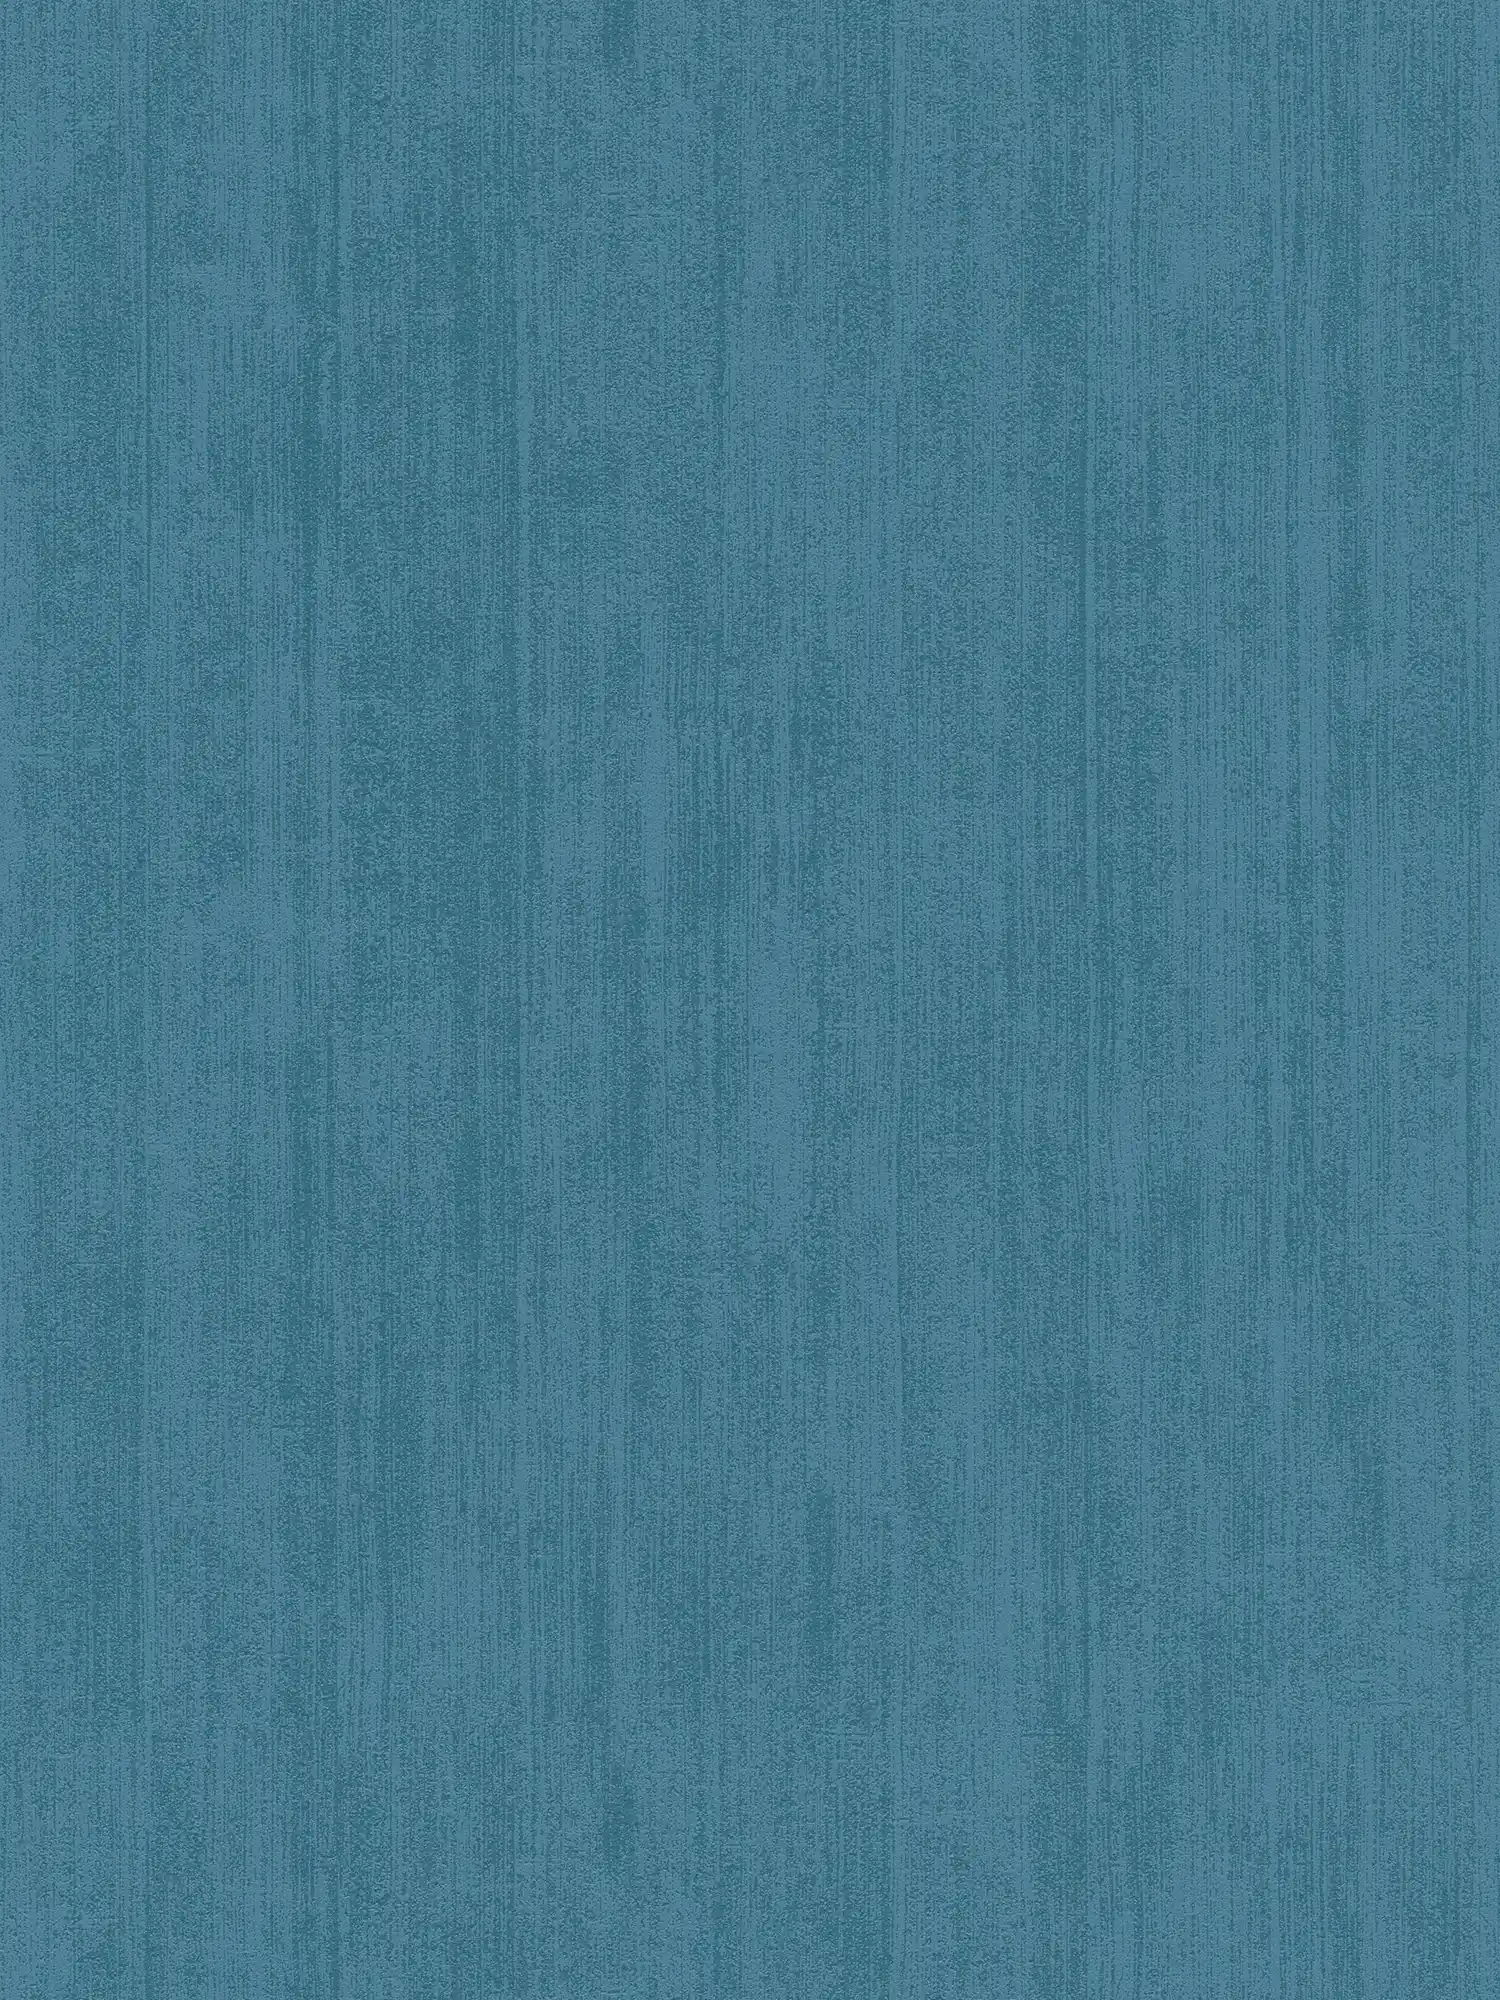 Effen vliesbehang met toon-op-toon arceringen - blauw
